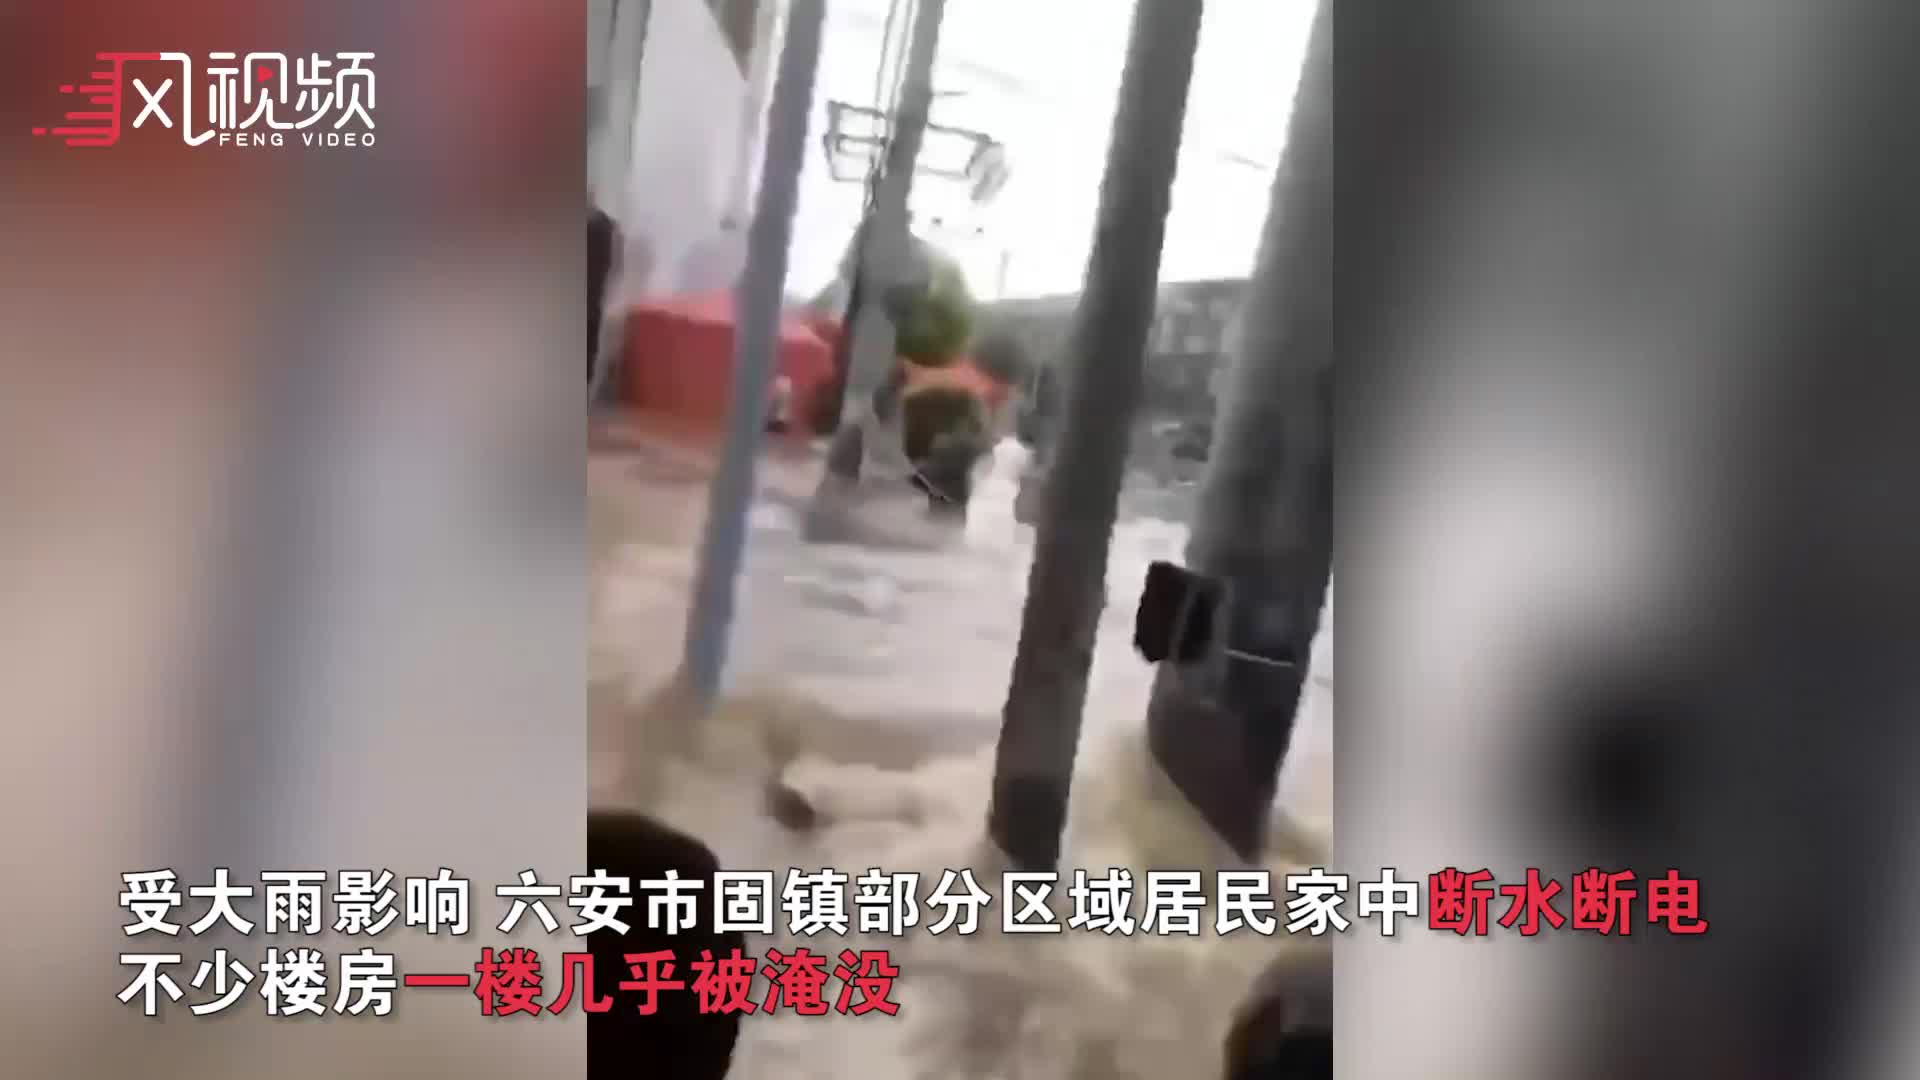 安徽六安固镇遭受严重洪涝灾害 多名村民受困 